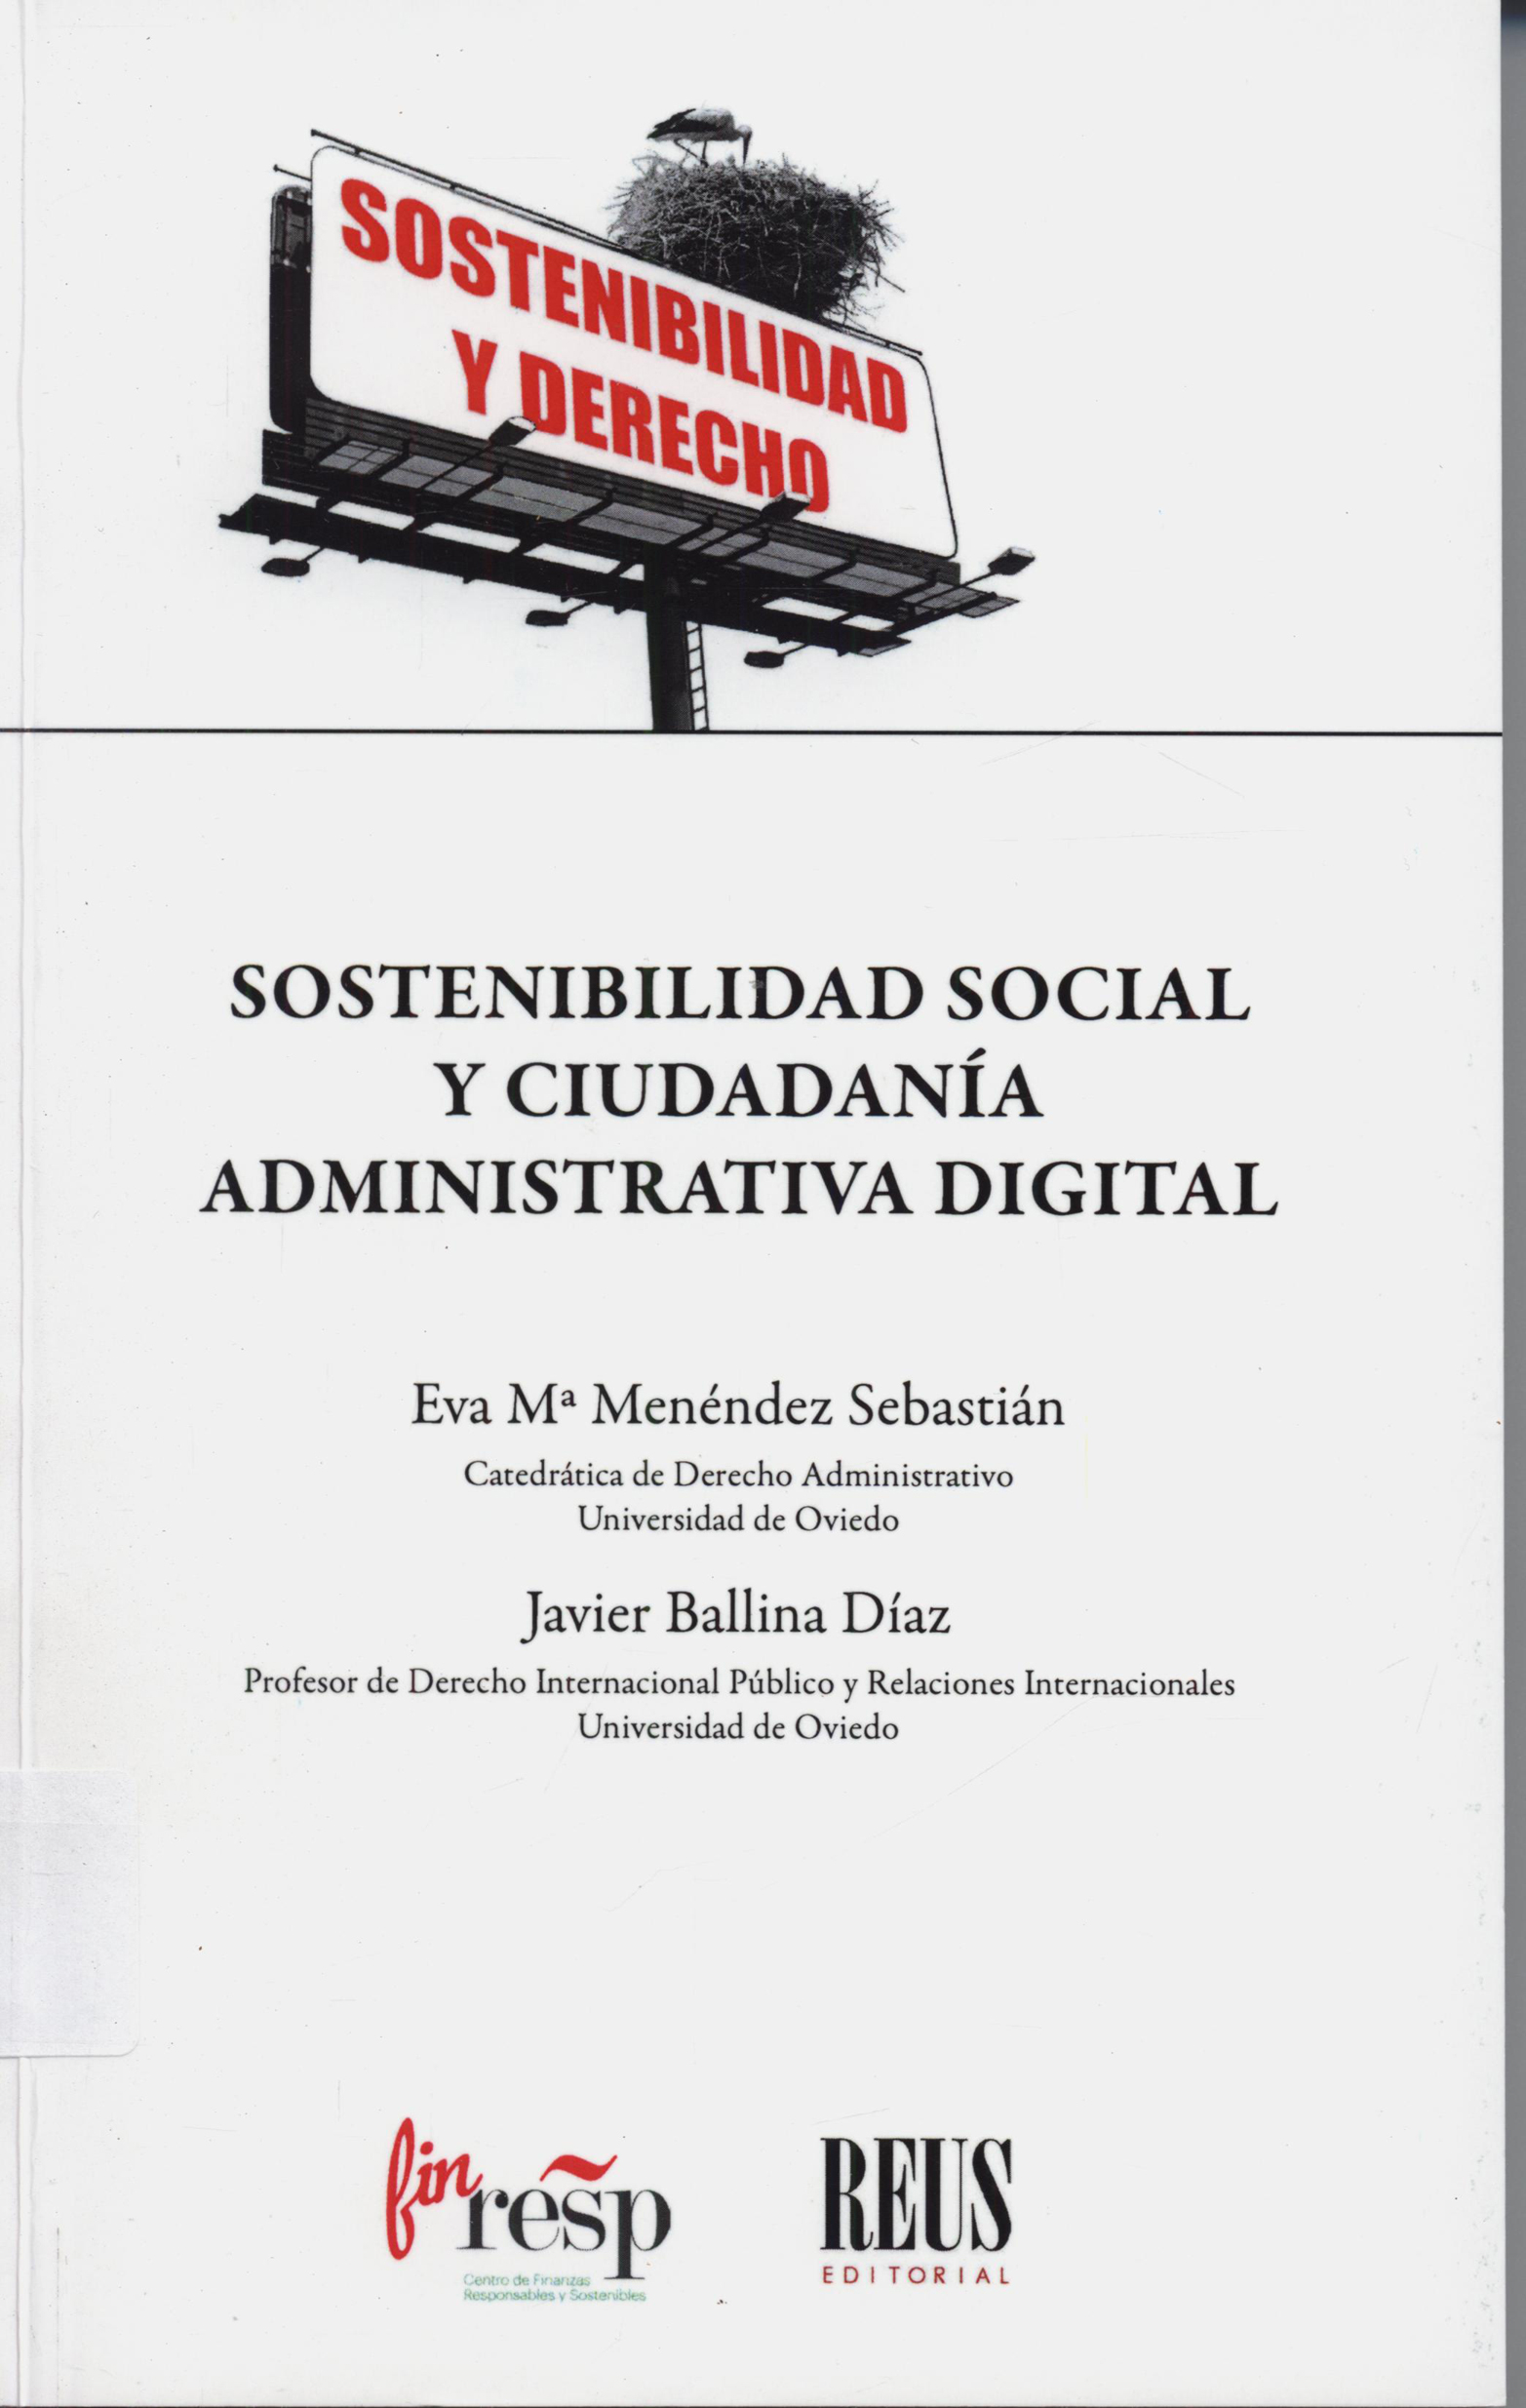 Imagen de portada del libro Sostenibilidad social y ciudadanía administrativa digital